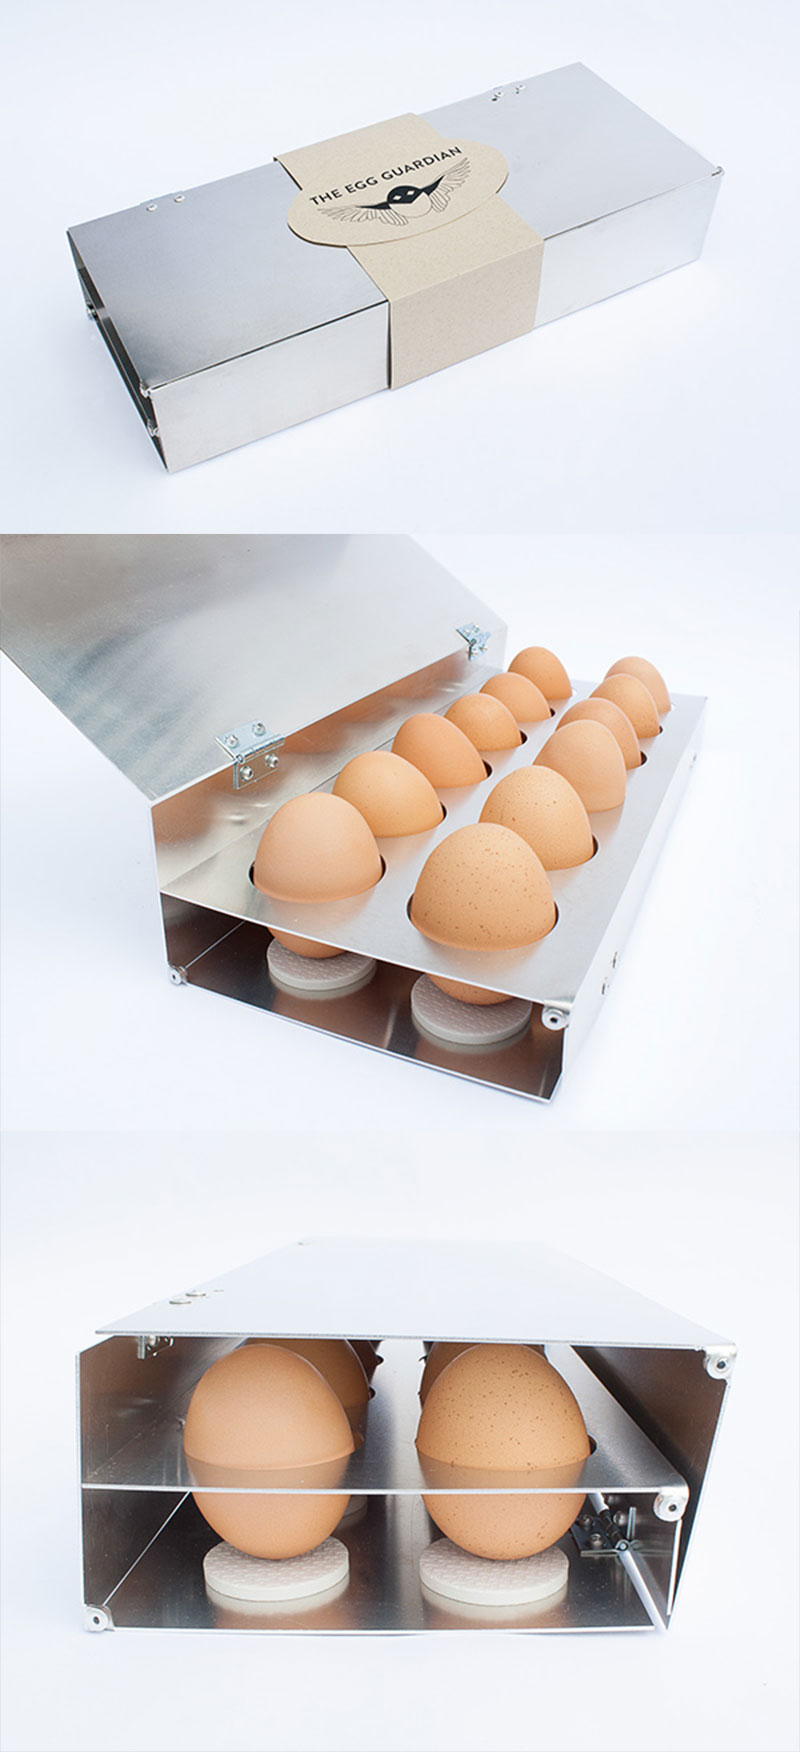 39款创意鸡蛋包装设计